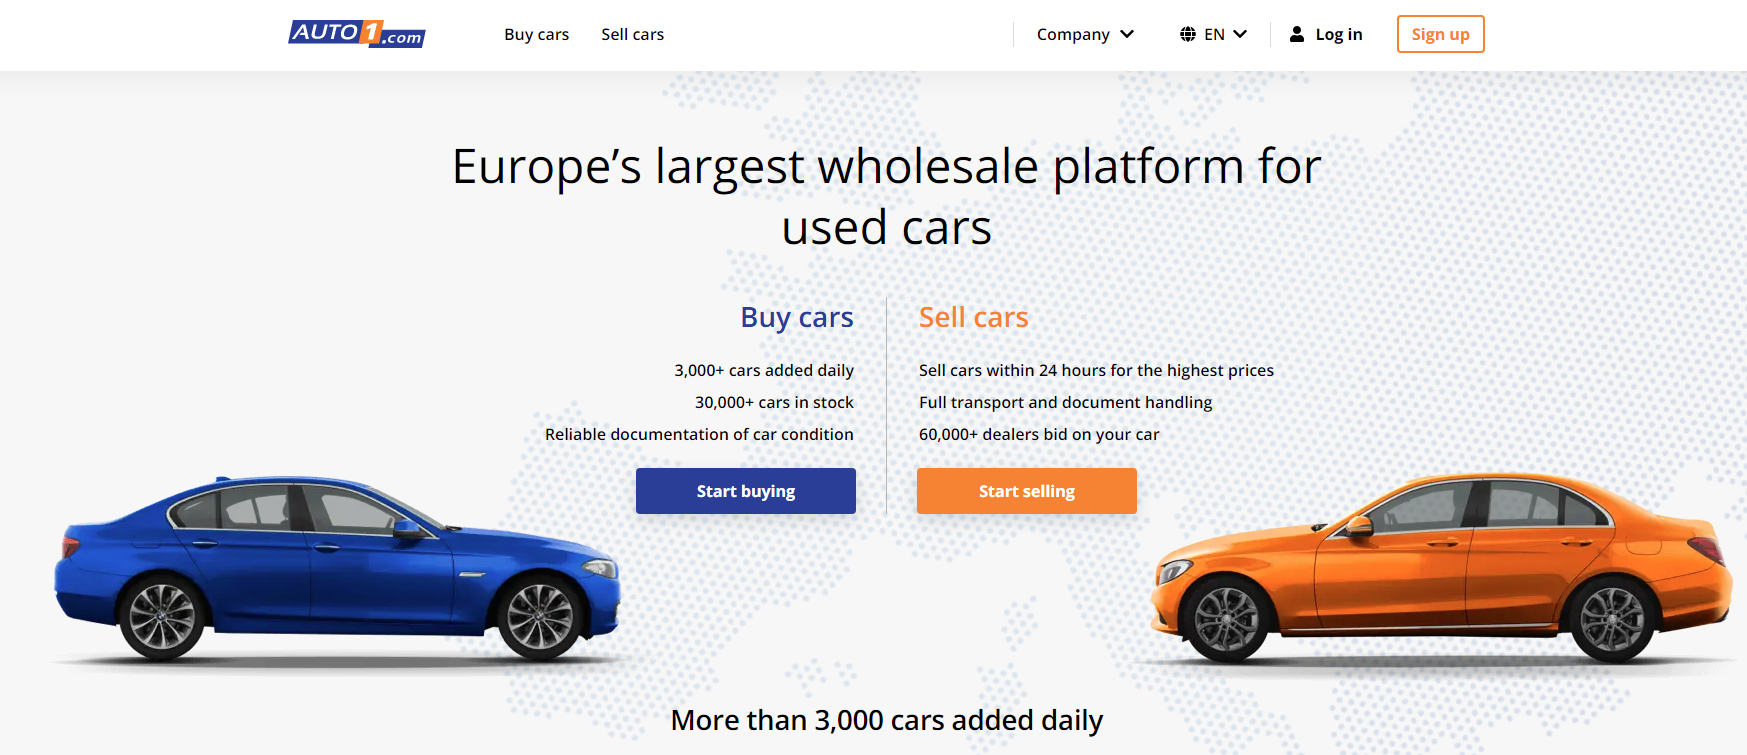 12个欧洲二手车交易平台 App汇总与推荐 英国 德国 法国等二手车买卖 Extrabux